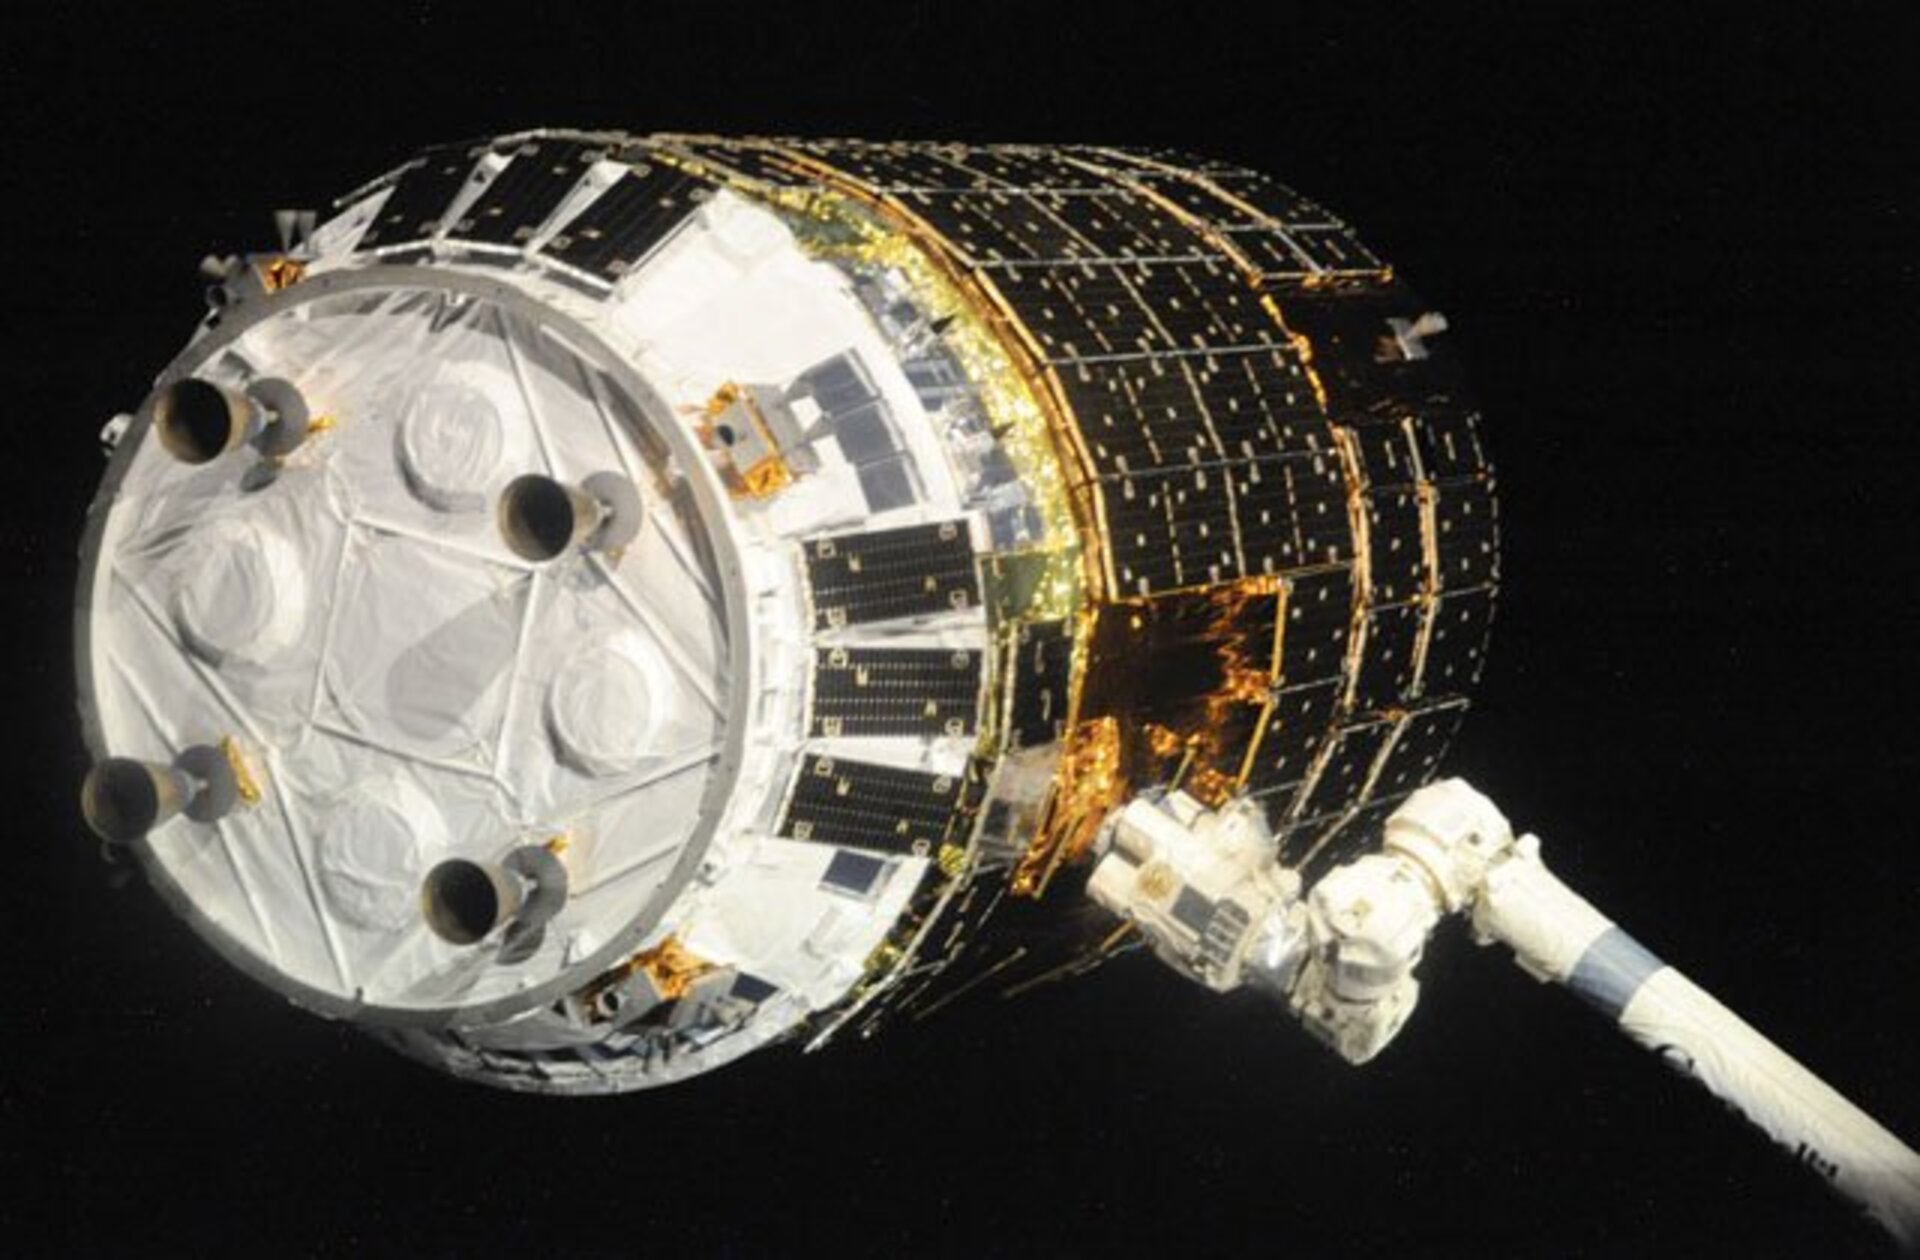 HTV 1 wordt met de Canadarm2-robotarm van het ruimtestation vastgegrepen